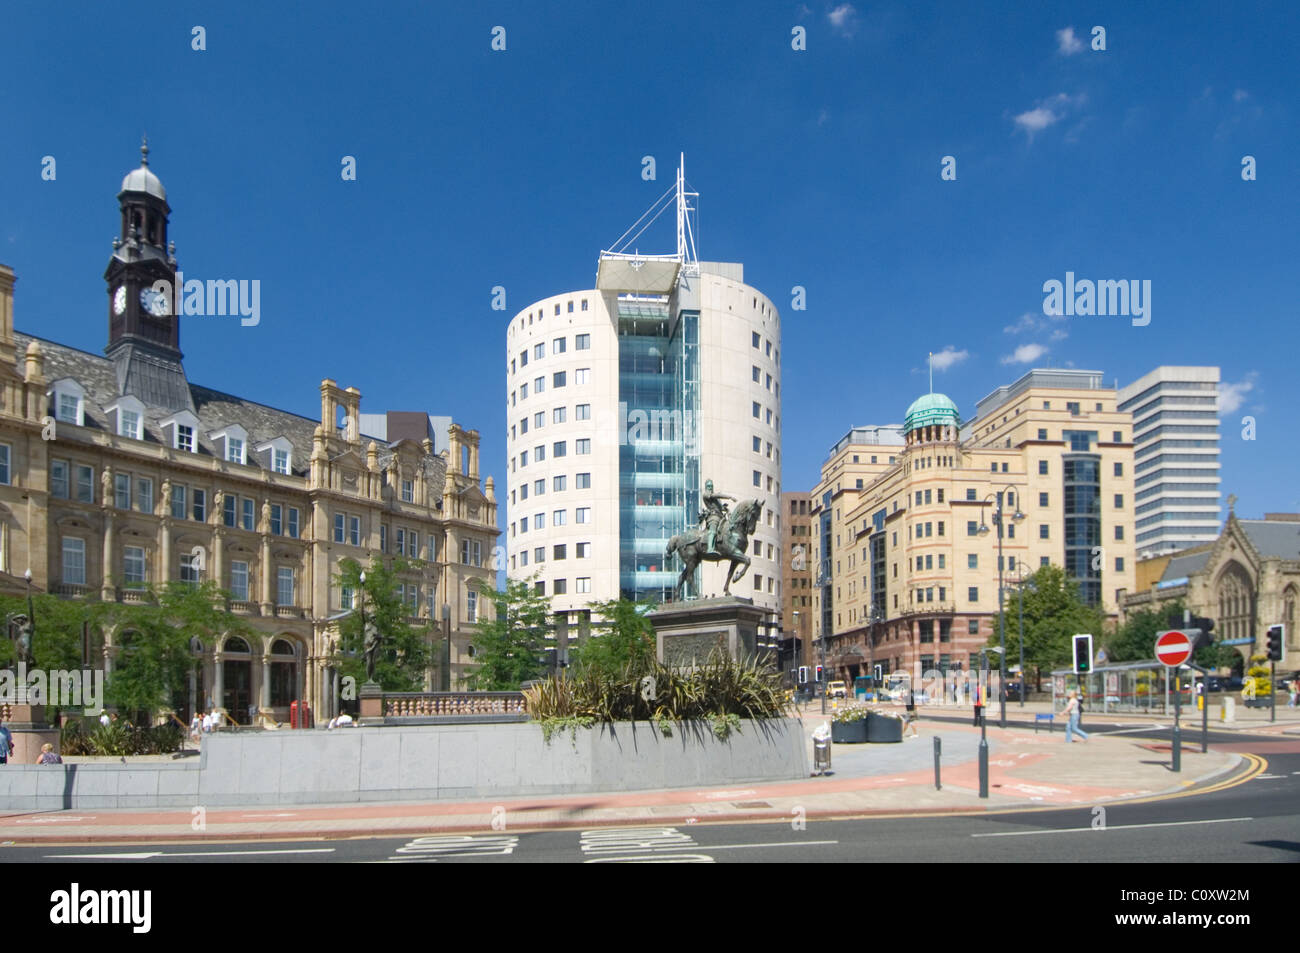 Place de la ville centre-ville de Leeds West Yorkshire, Angleterre. Banque D'Images